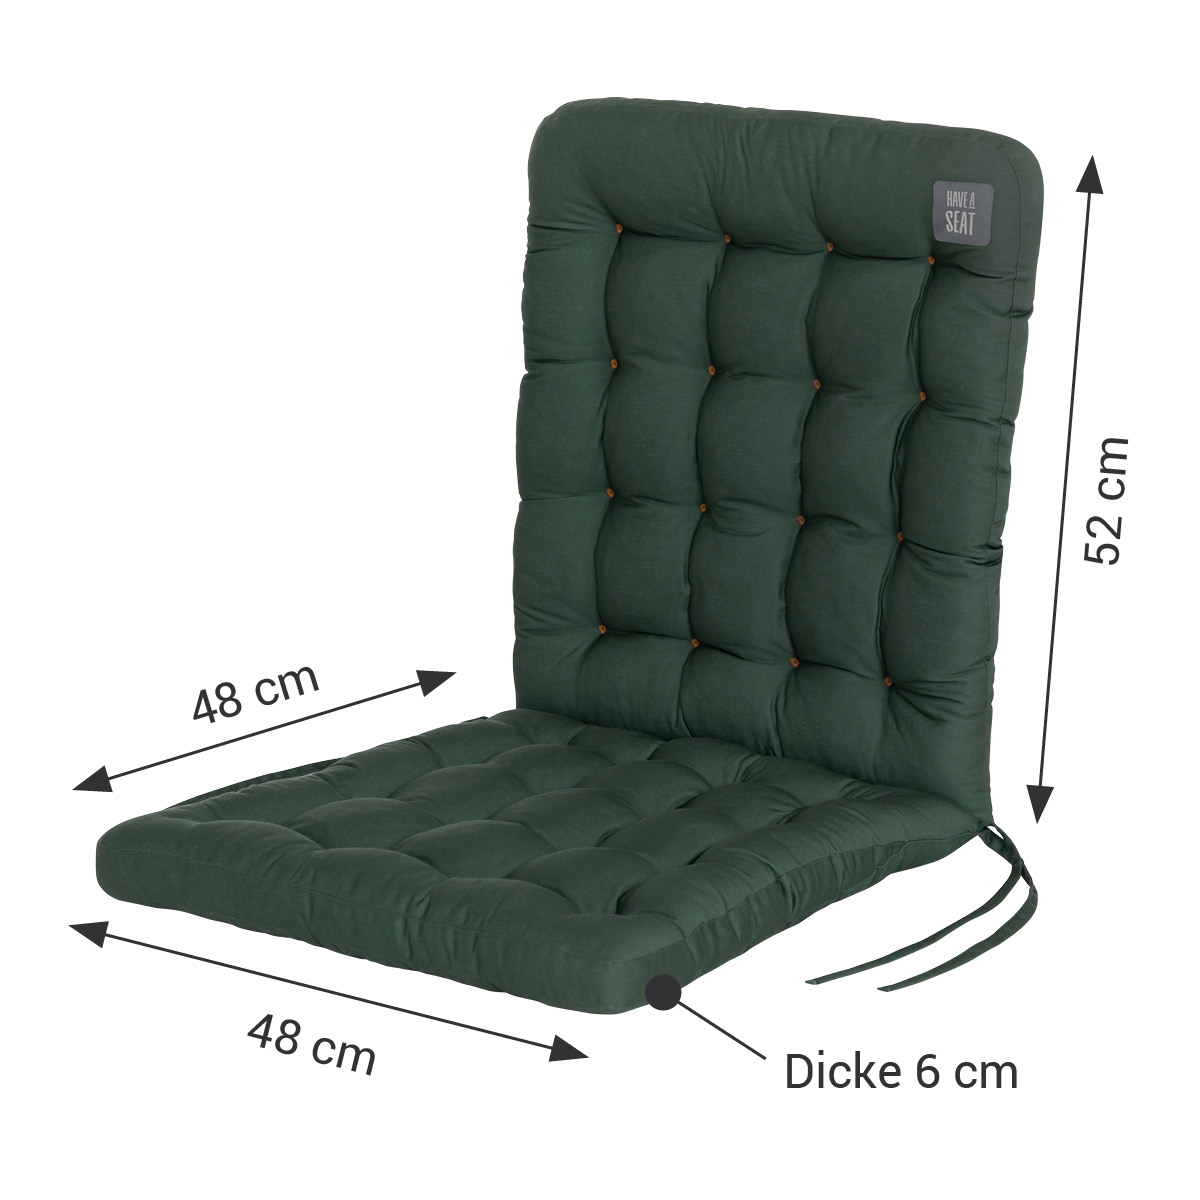 Dunkelgrüne Stuhlauflage für Niedriglehner Gartenstuhl | Rückenpolster 52x48 cm, Sitzpolster 48x48 cm, Dicke 6 cm, Gesamtgröße 120x48 cm 